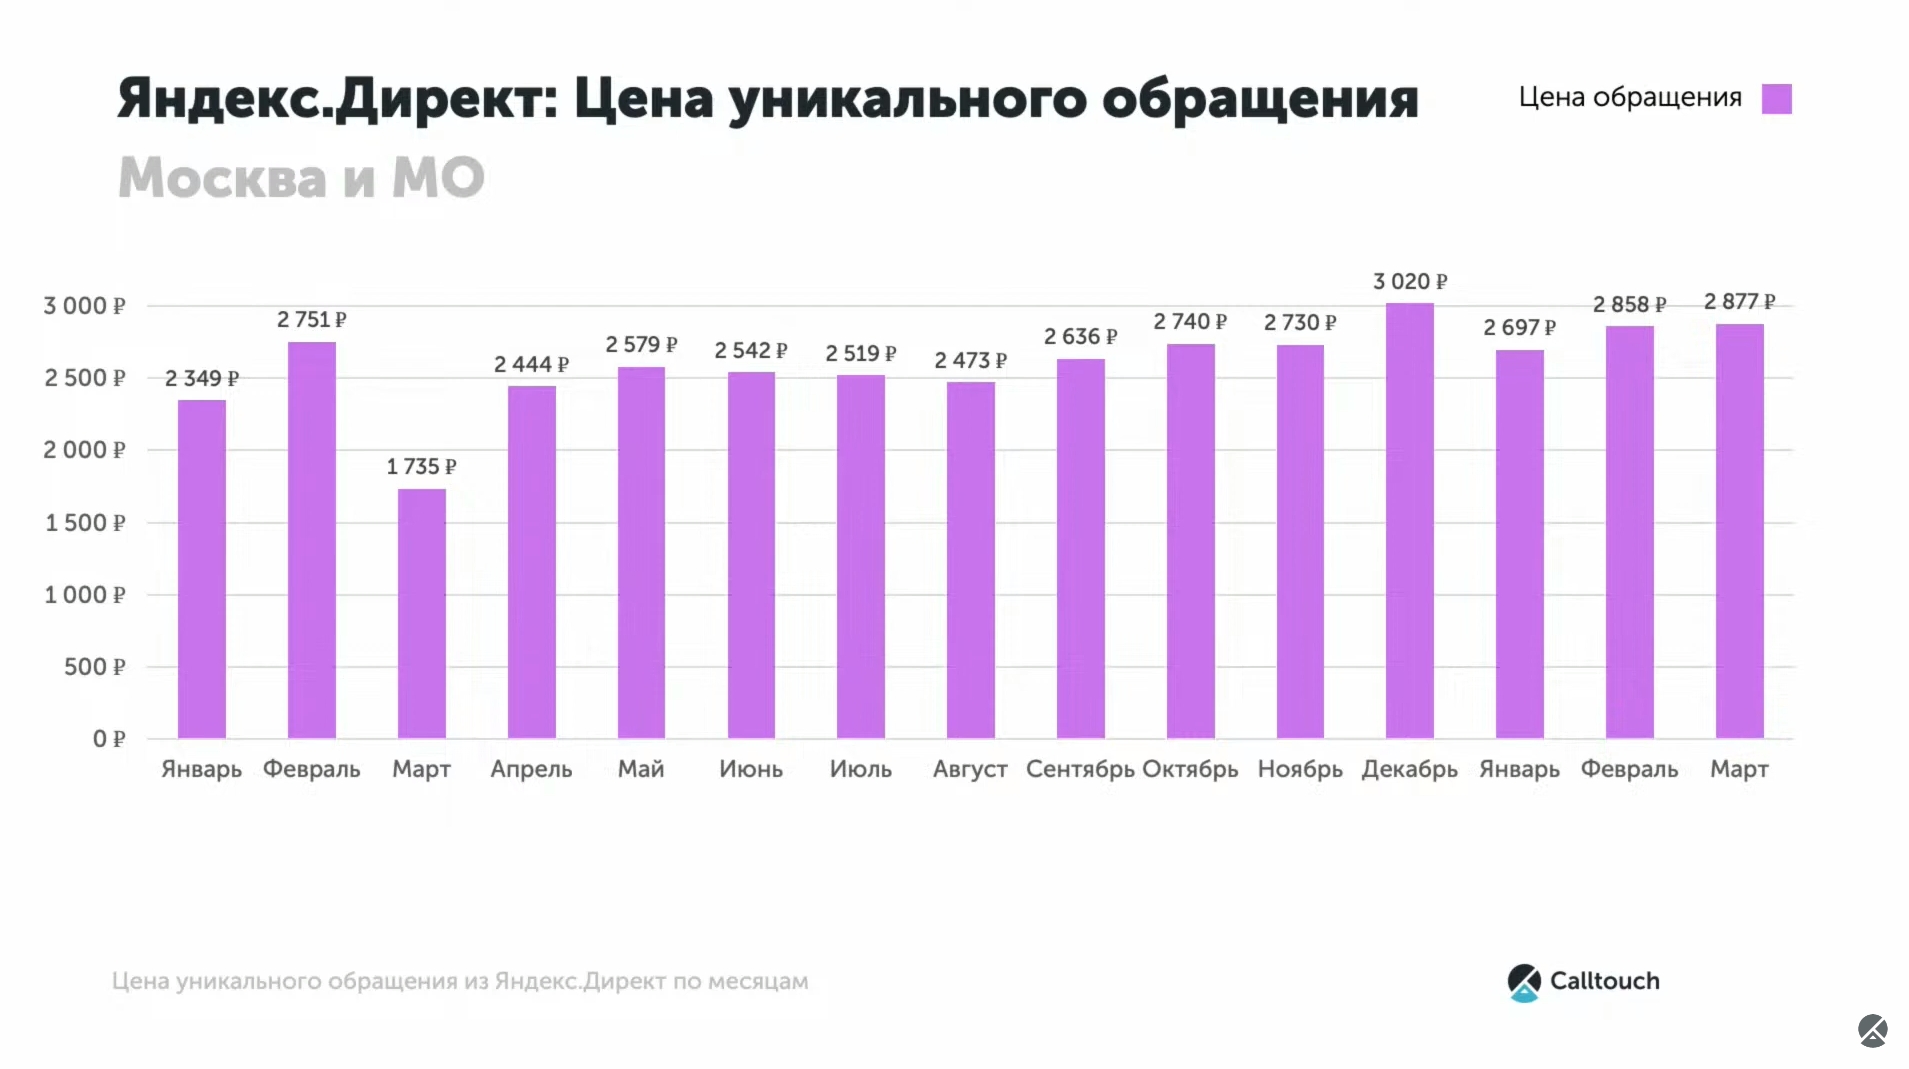 Цена уникального обращения в Яндекс Директ